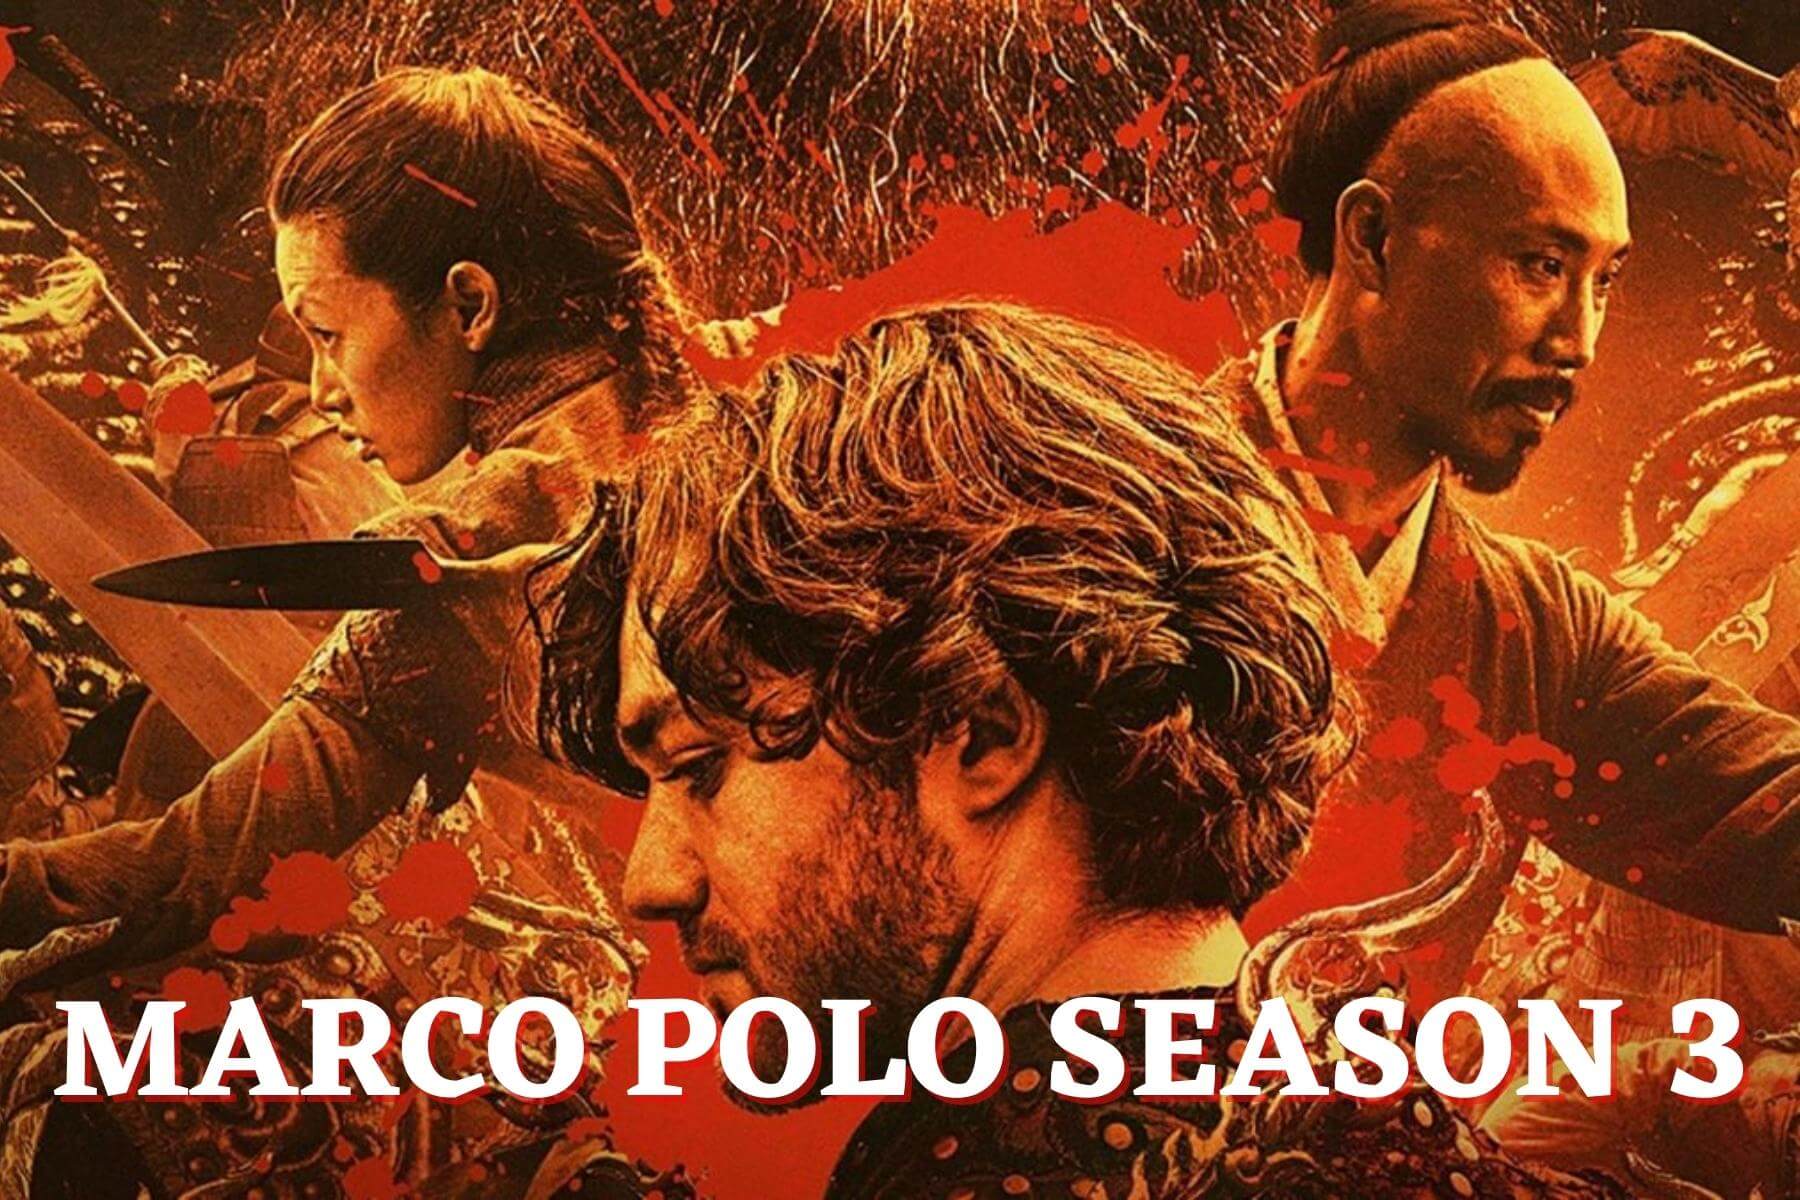 Marco Polo season 3